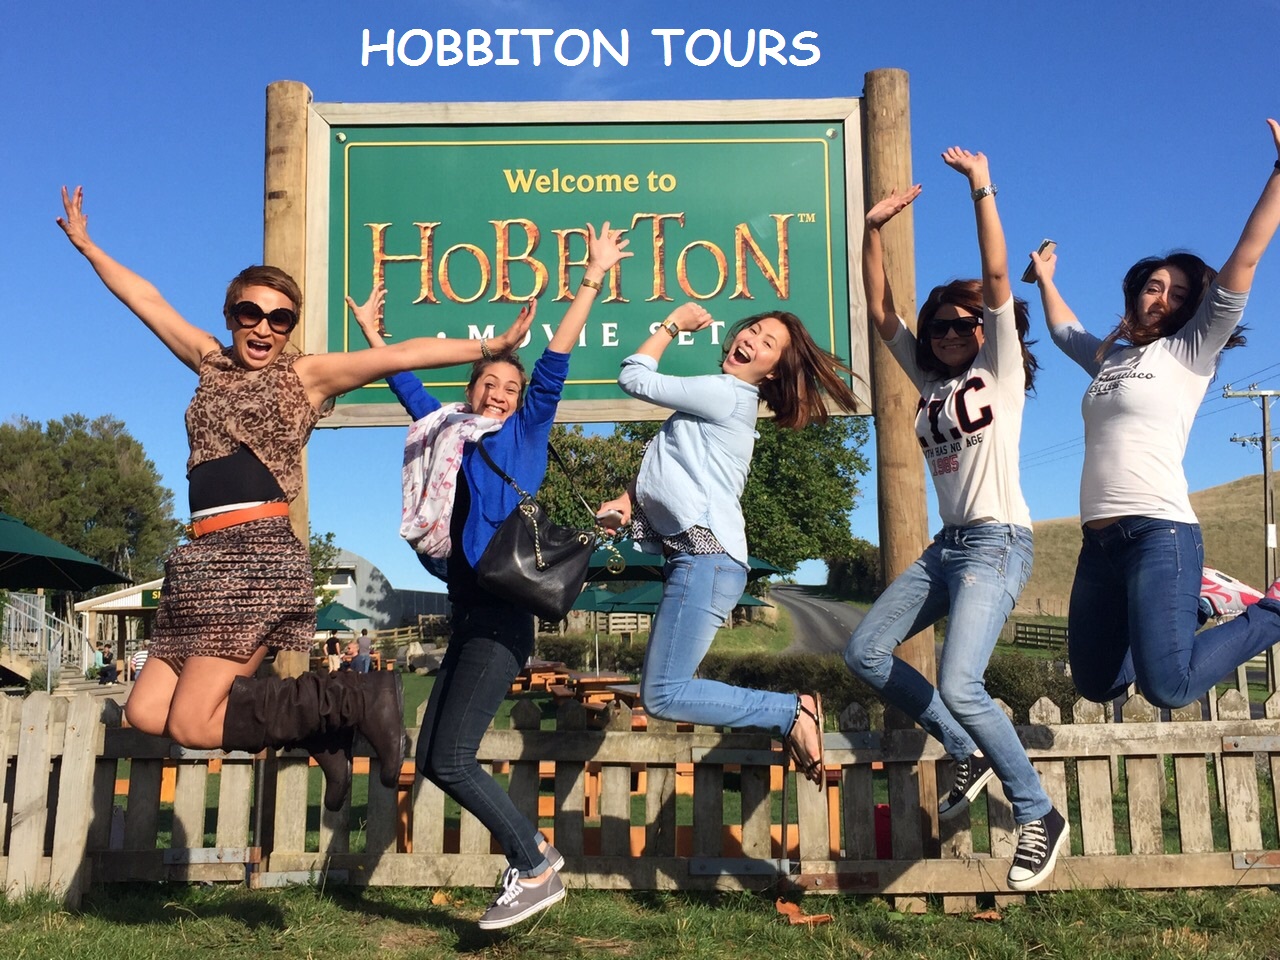 Hobbiton Movie Set Tours